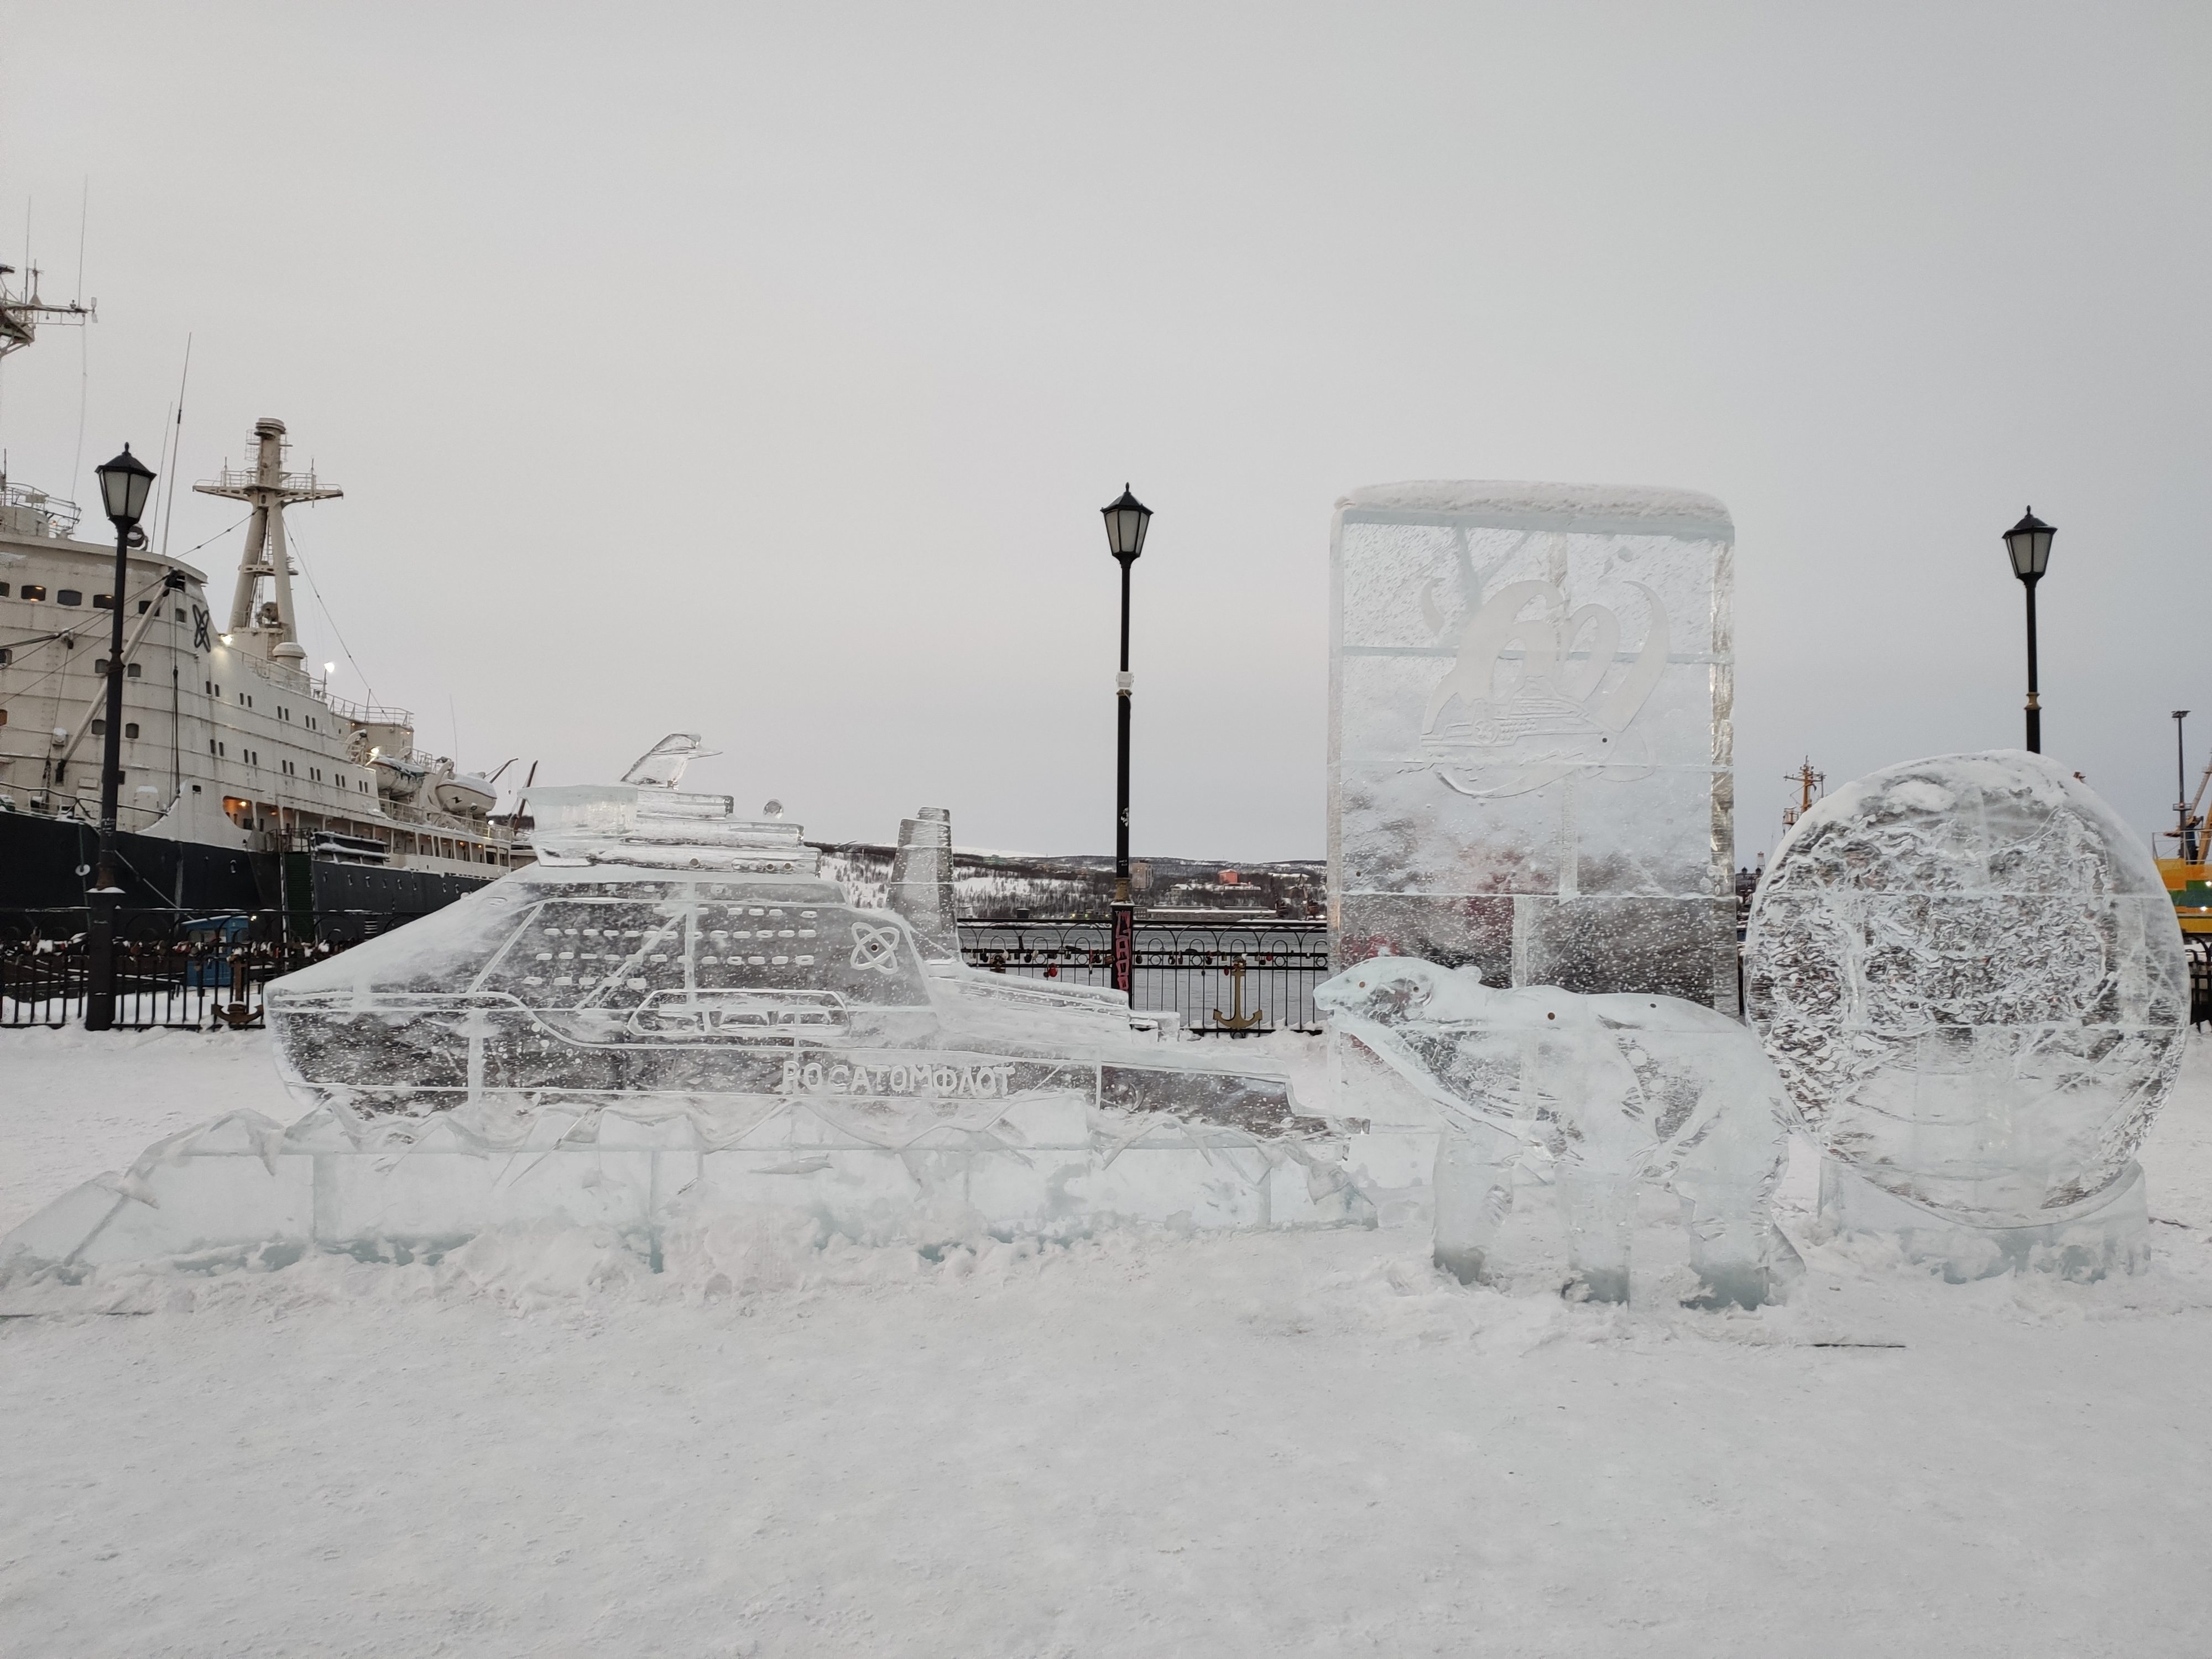 Mourmansk, porte de l'Arctique/ aufildeslieux.fr/sculptures de glace sur le port de Mourmansk©K.Hibbs